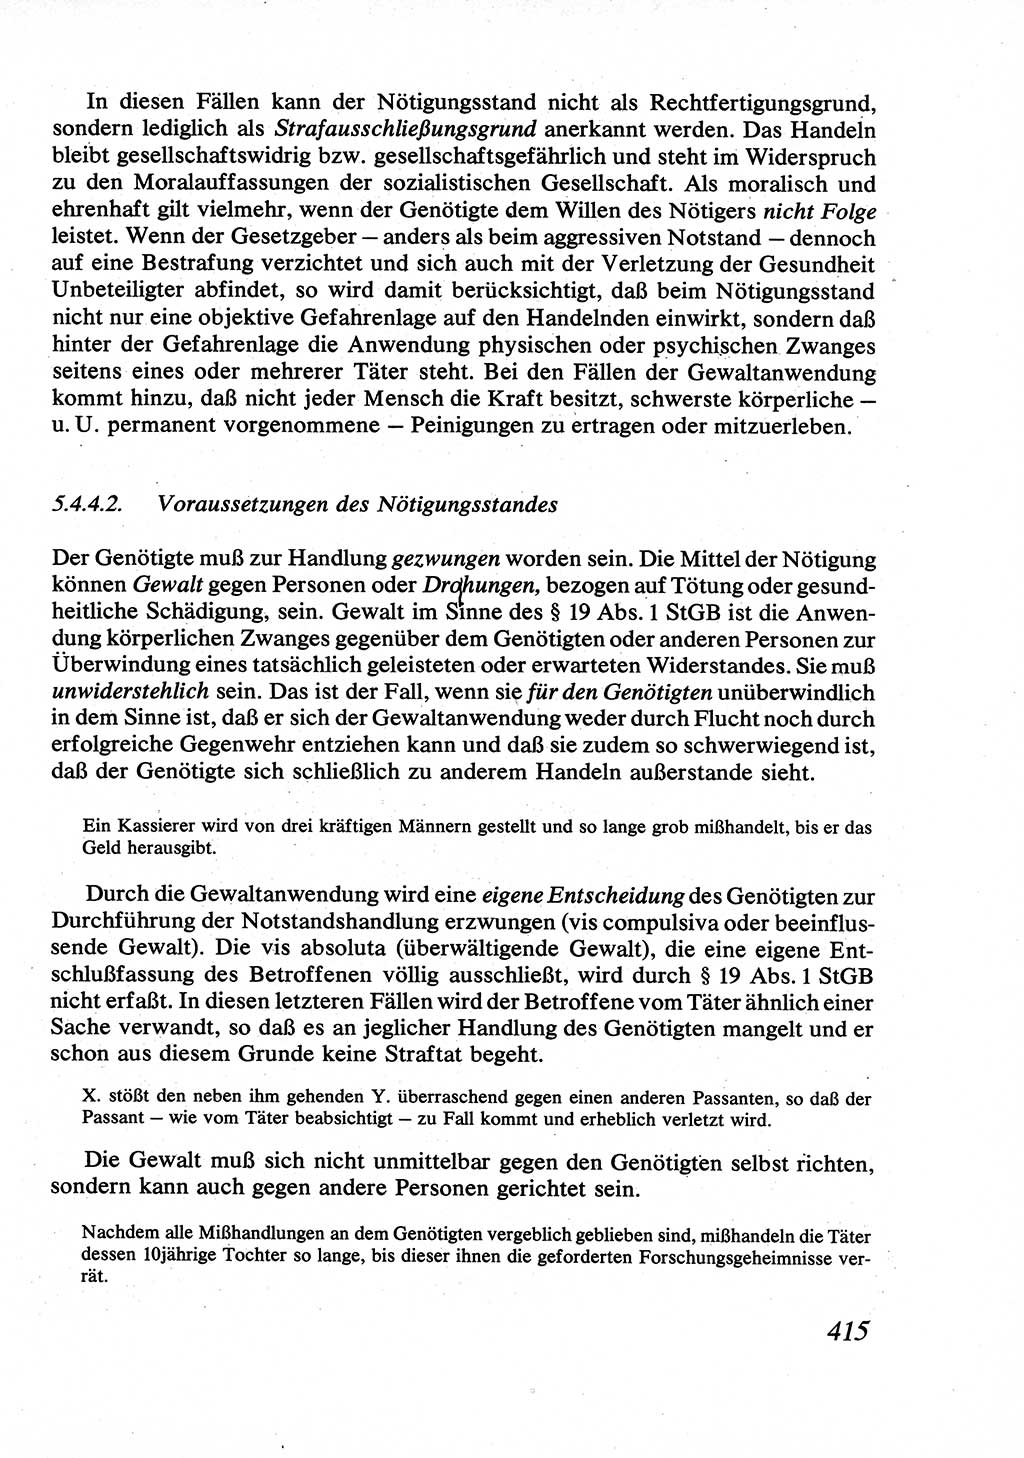 Strafrecht [Deutsche Demokratische Republik (DDR)], Allgemeiner Teil, Lehrbuch 1976, Seite 415 (Strafr. DDR AT Lb. 1976, S. 415)